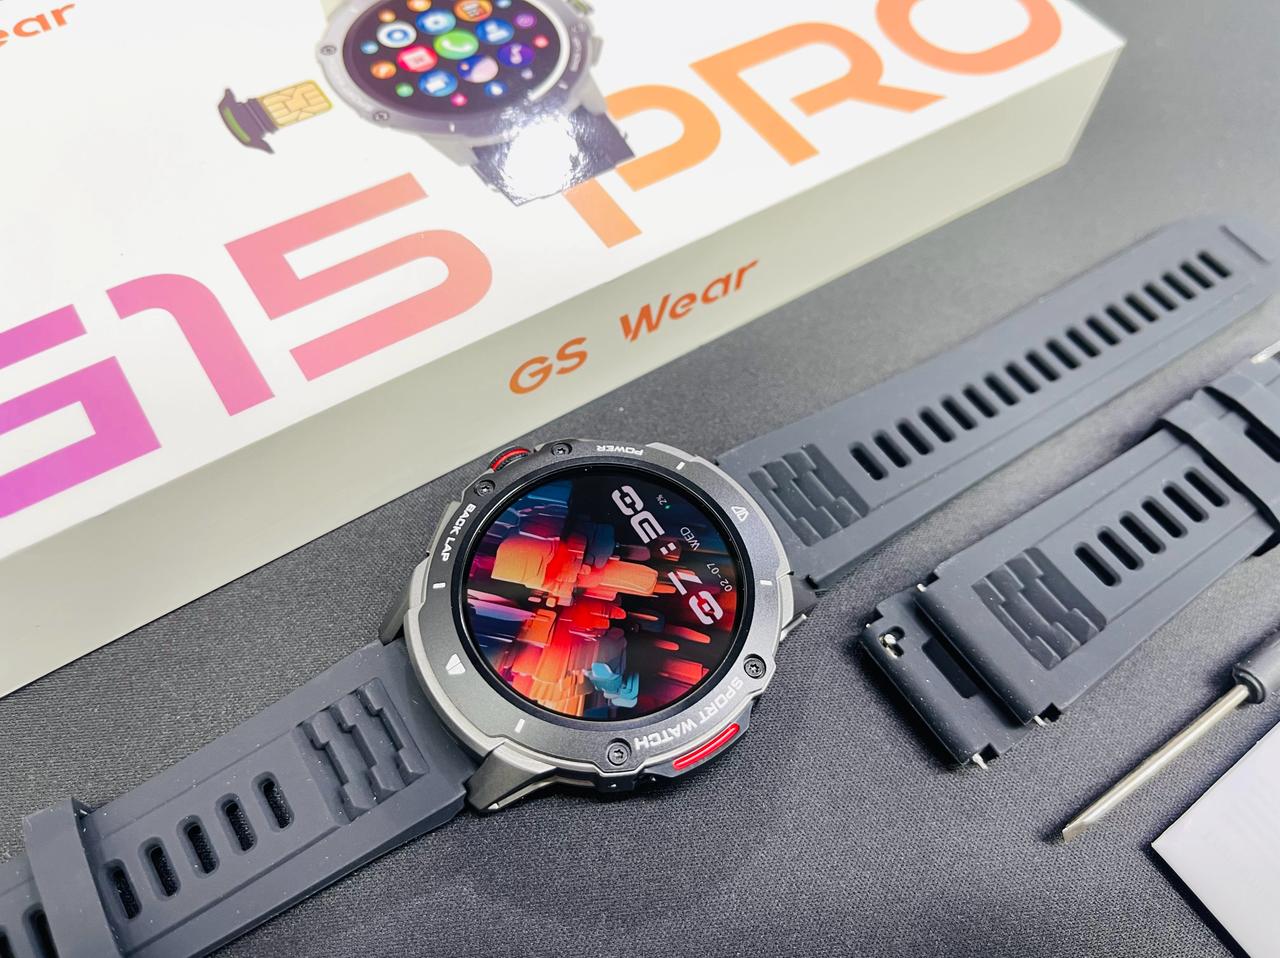 GS Wear Sim Watch Super Amoled Display 5G Watch